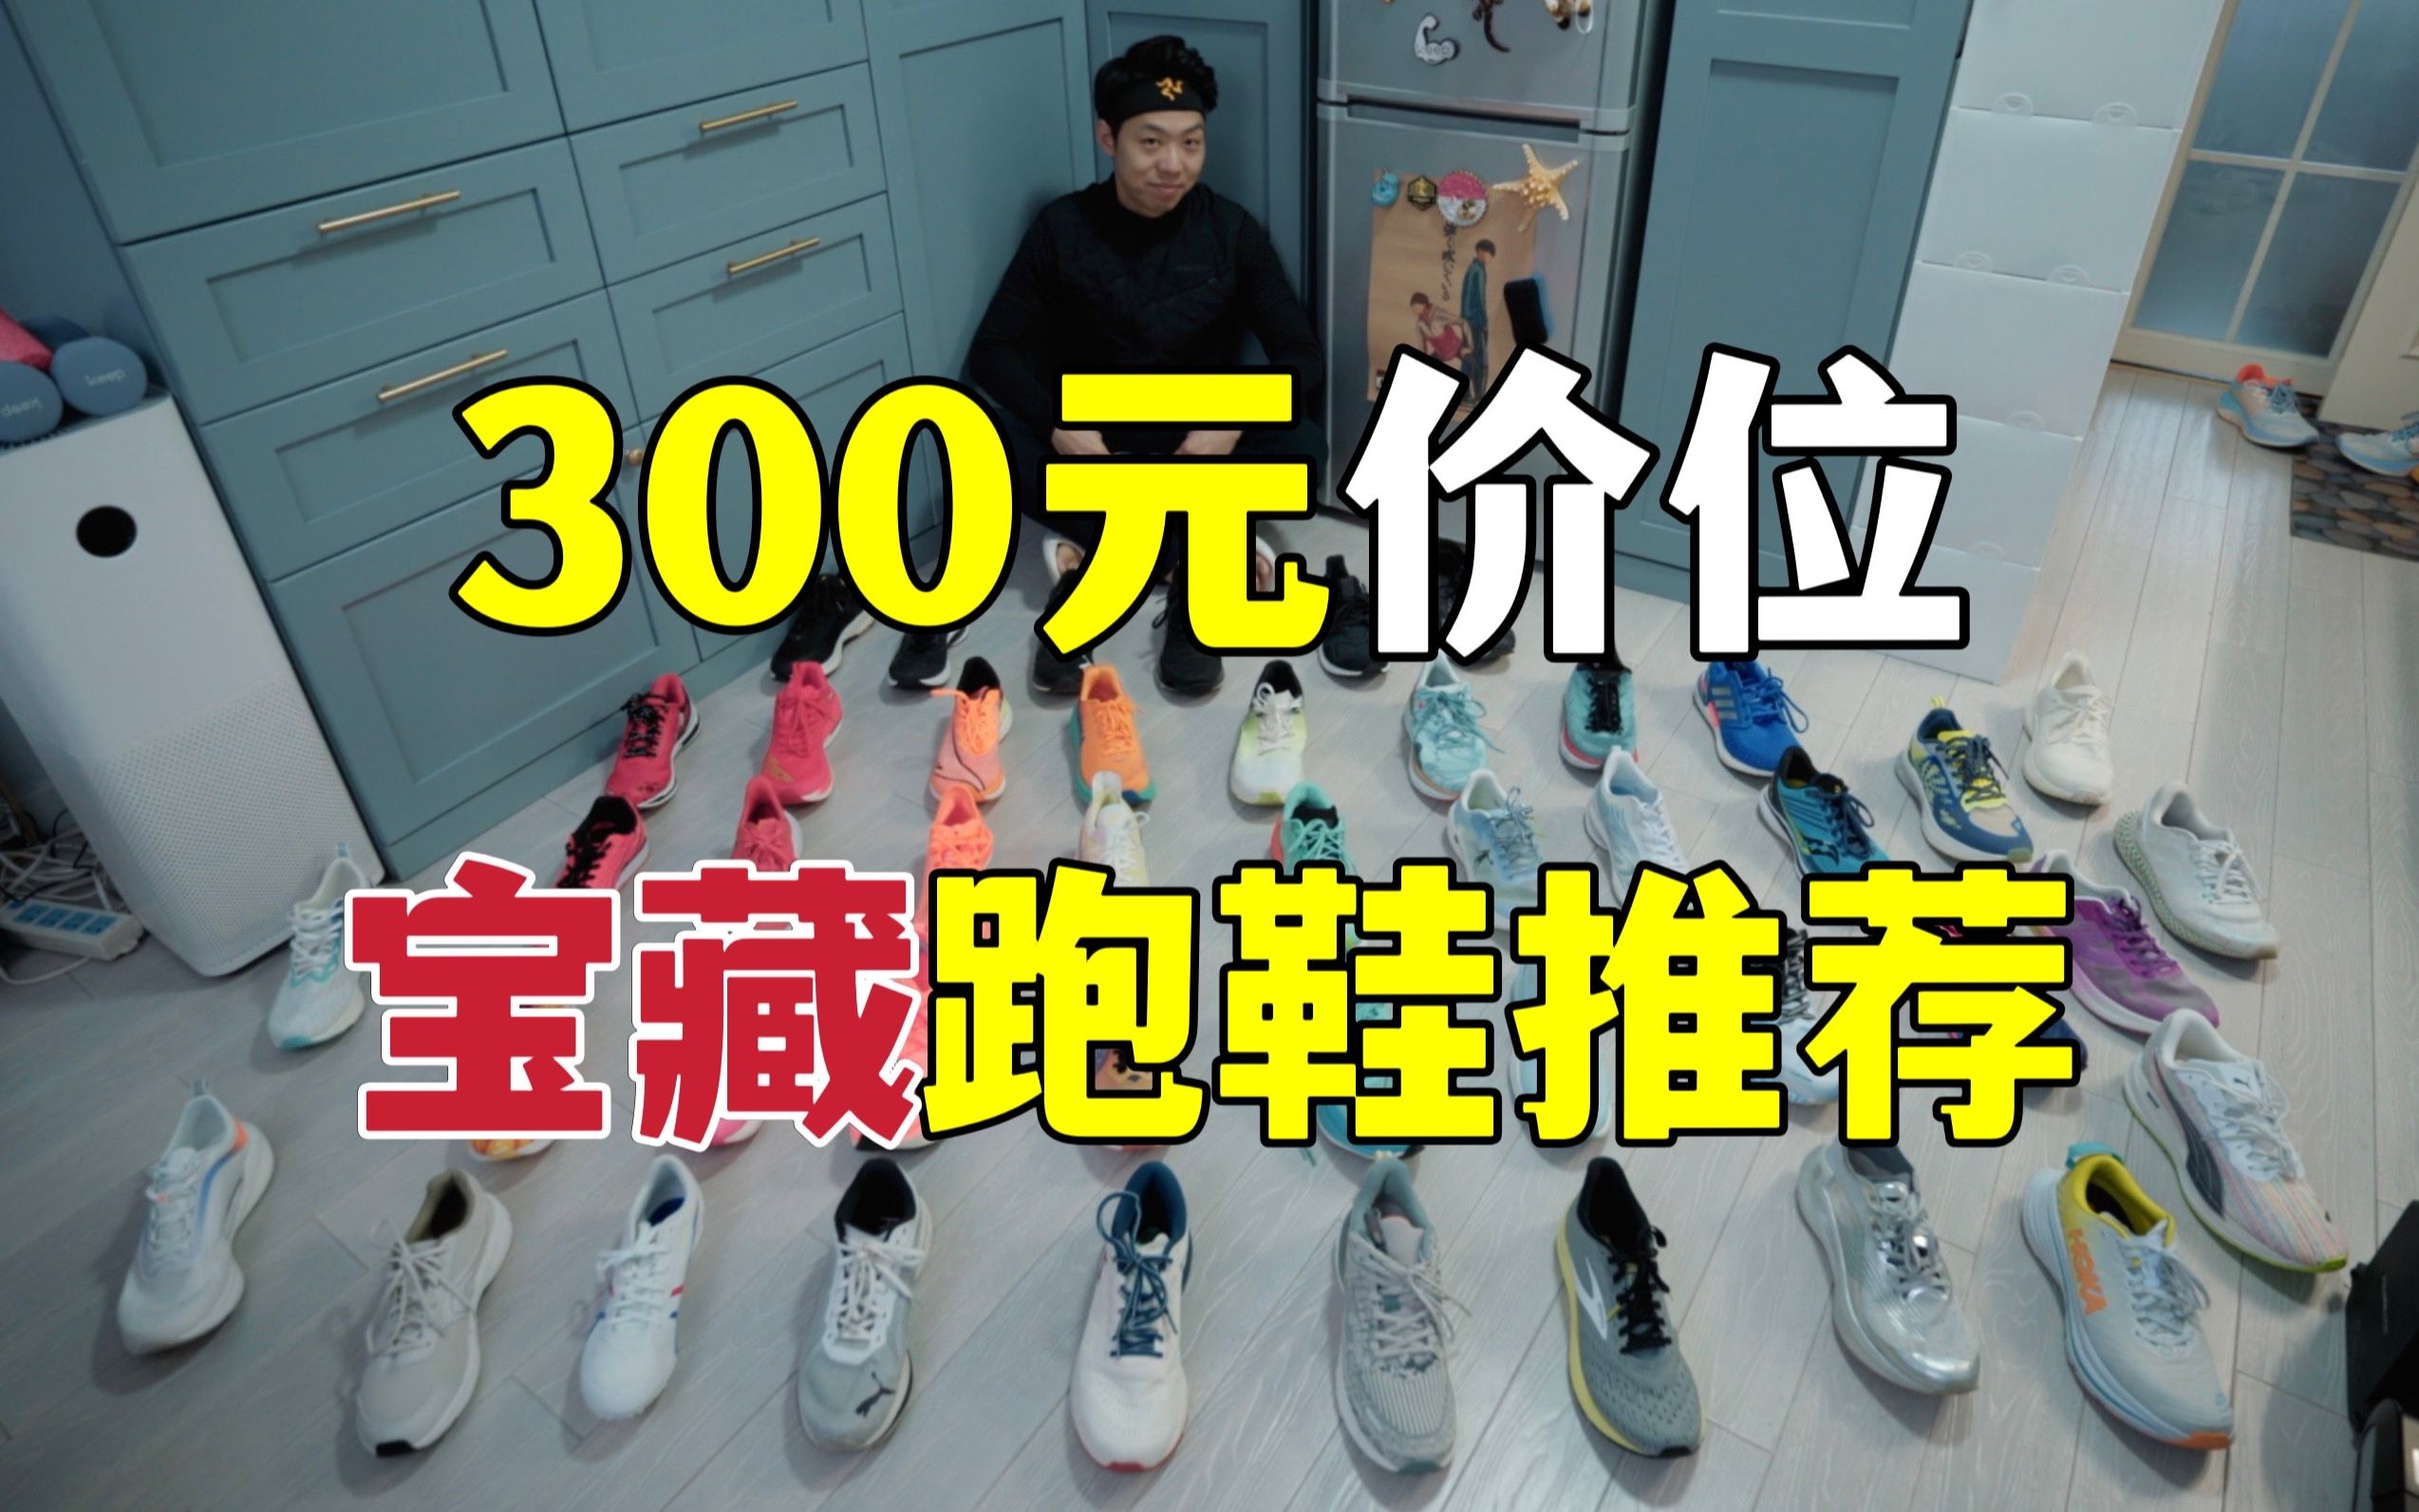 试了70双跑鞋，我帮你挑出了最值得买的300元宝藏跑鞋